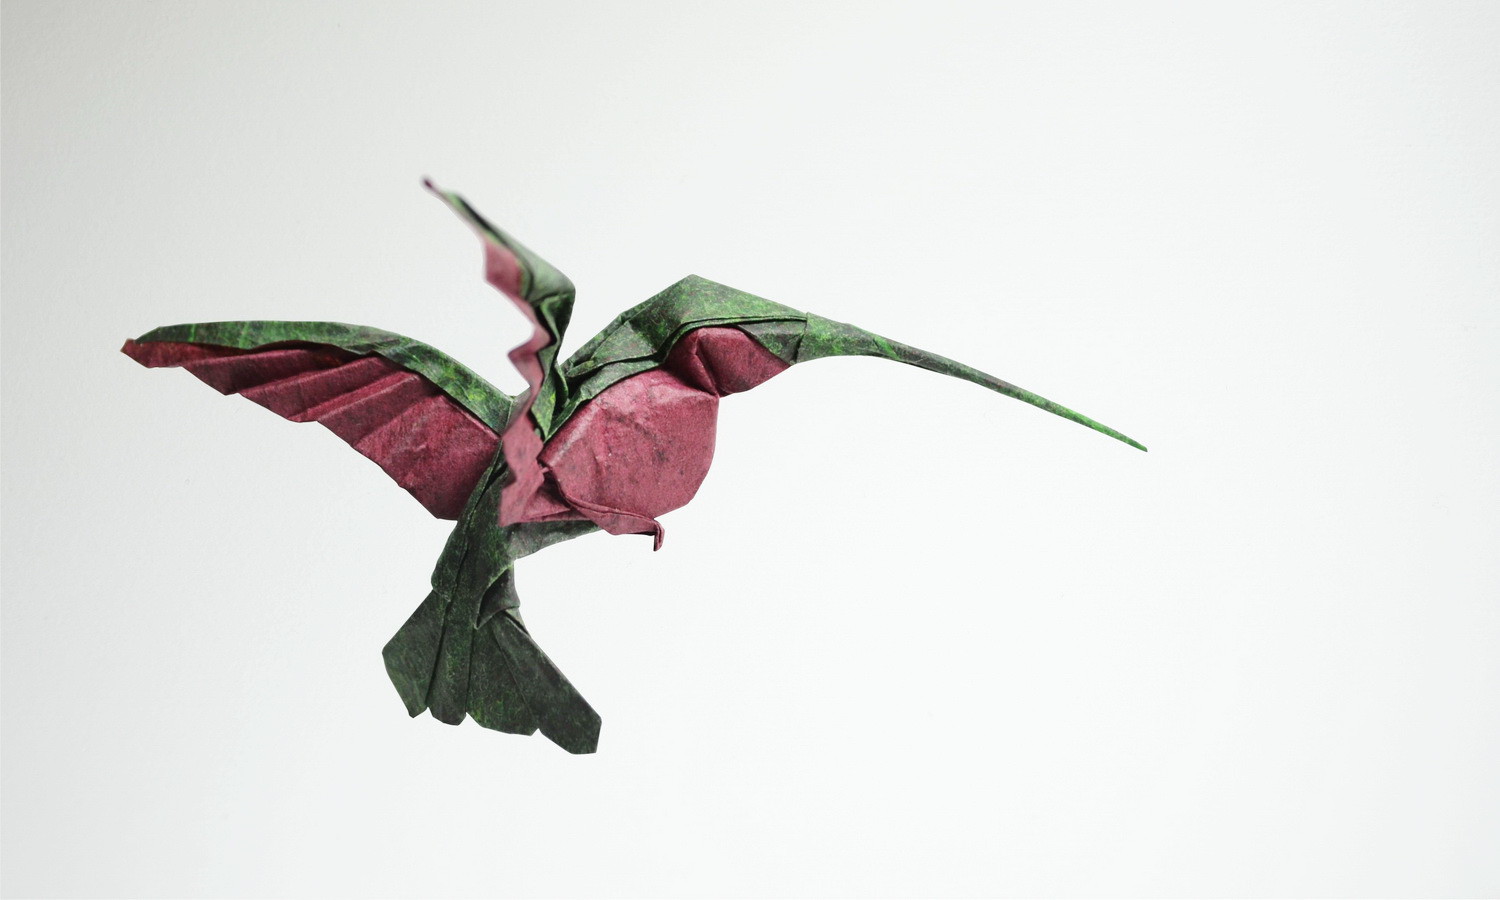 Потрясающие фигурки-оригами вьетнамского художника